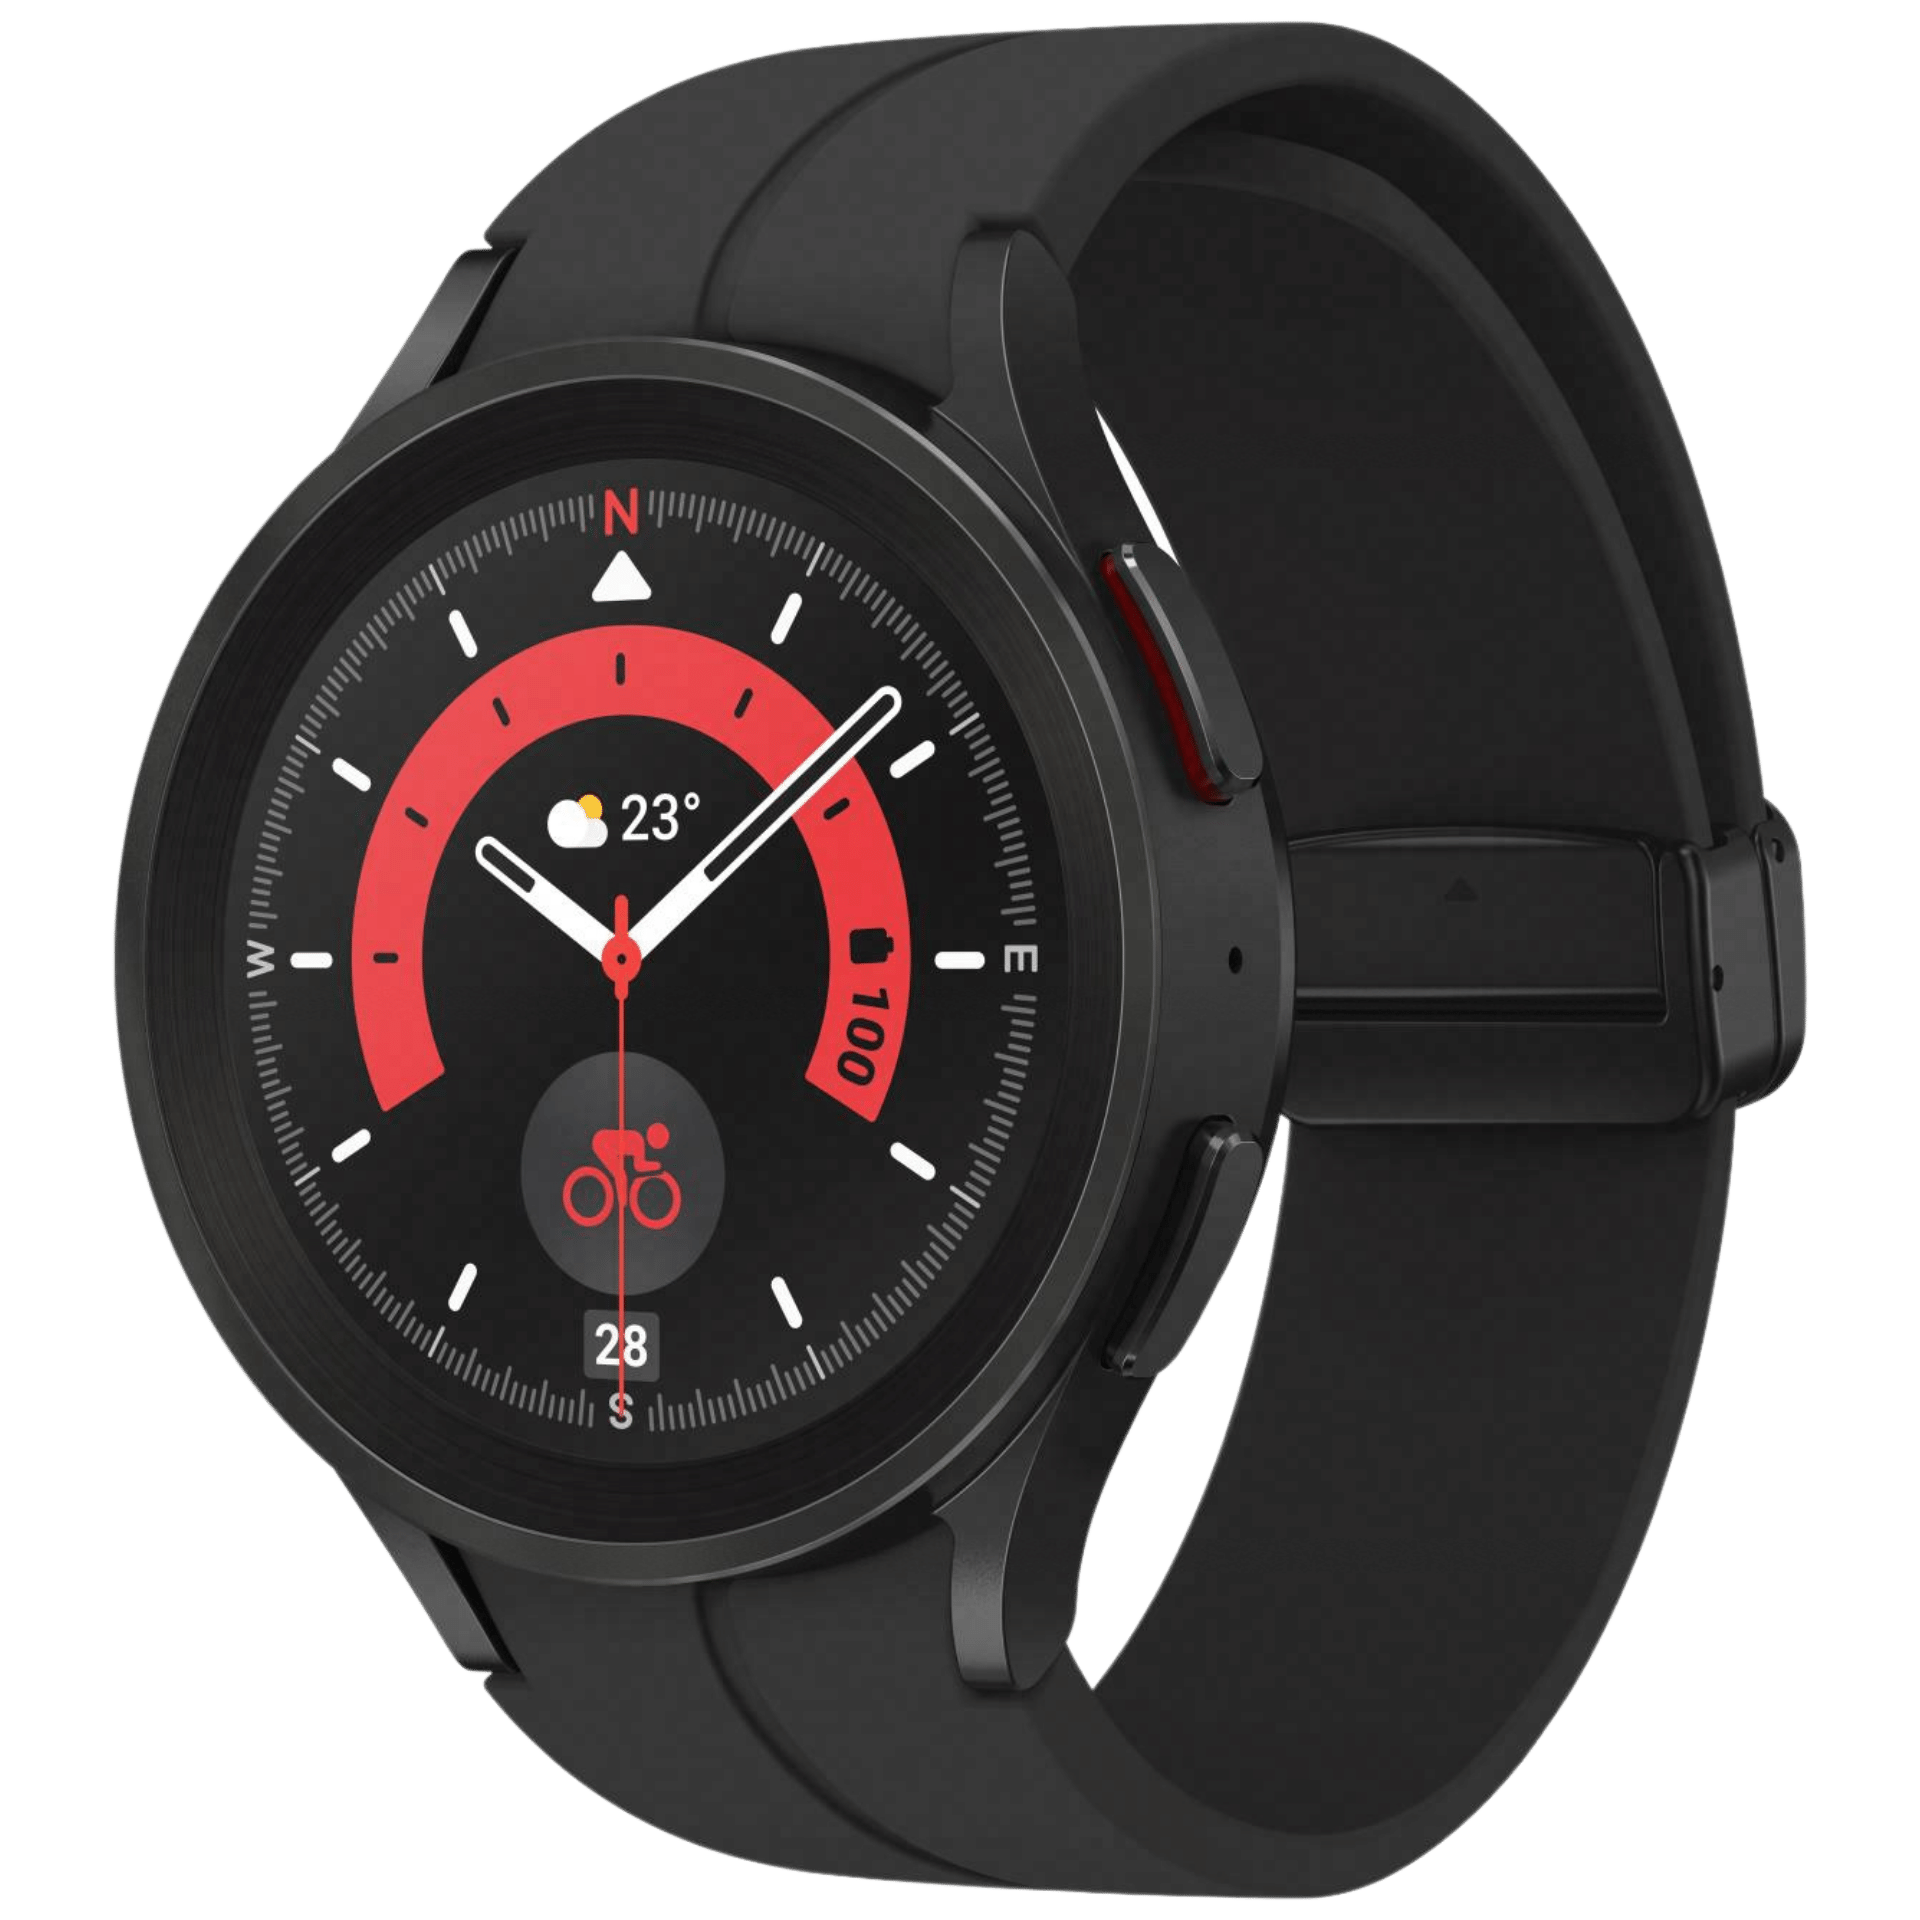 Produktbild der Samsung Galaxy Watch 5 Pro in Titan schwarz